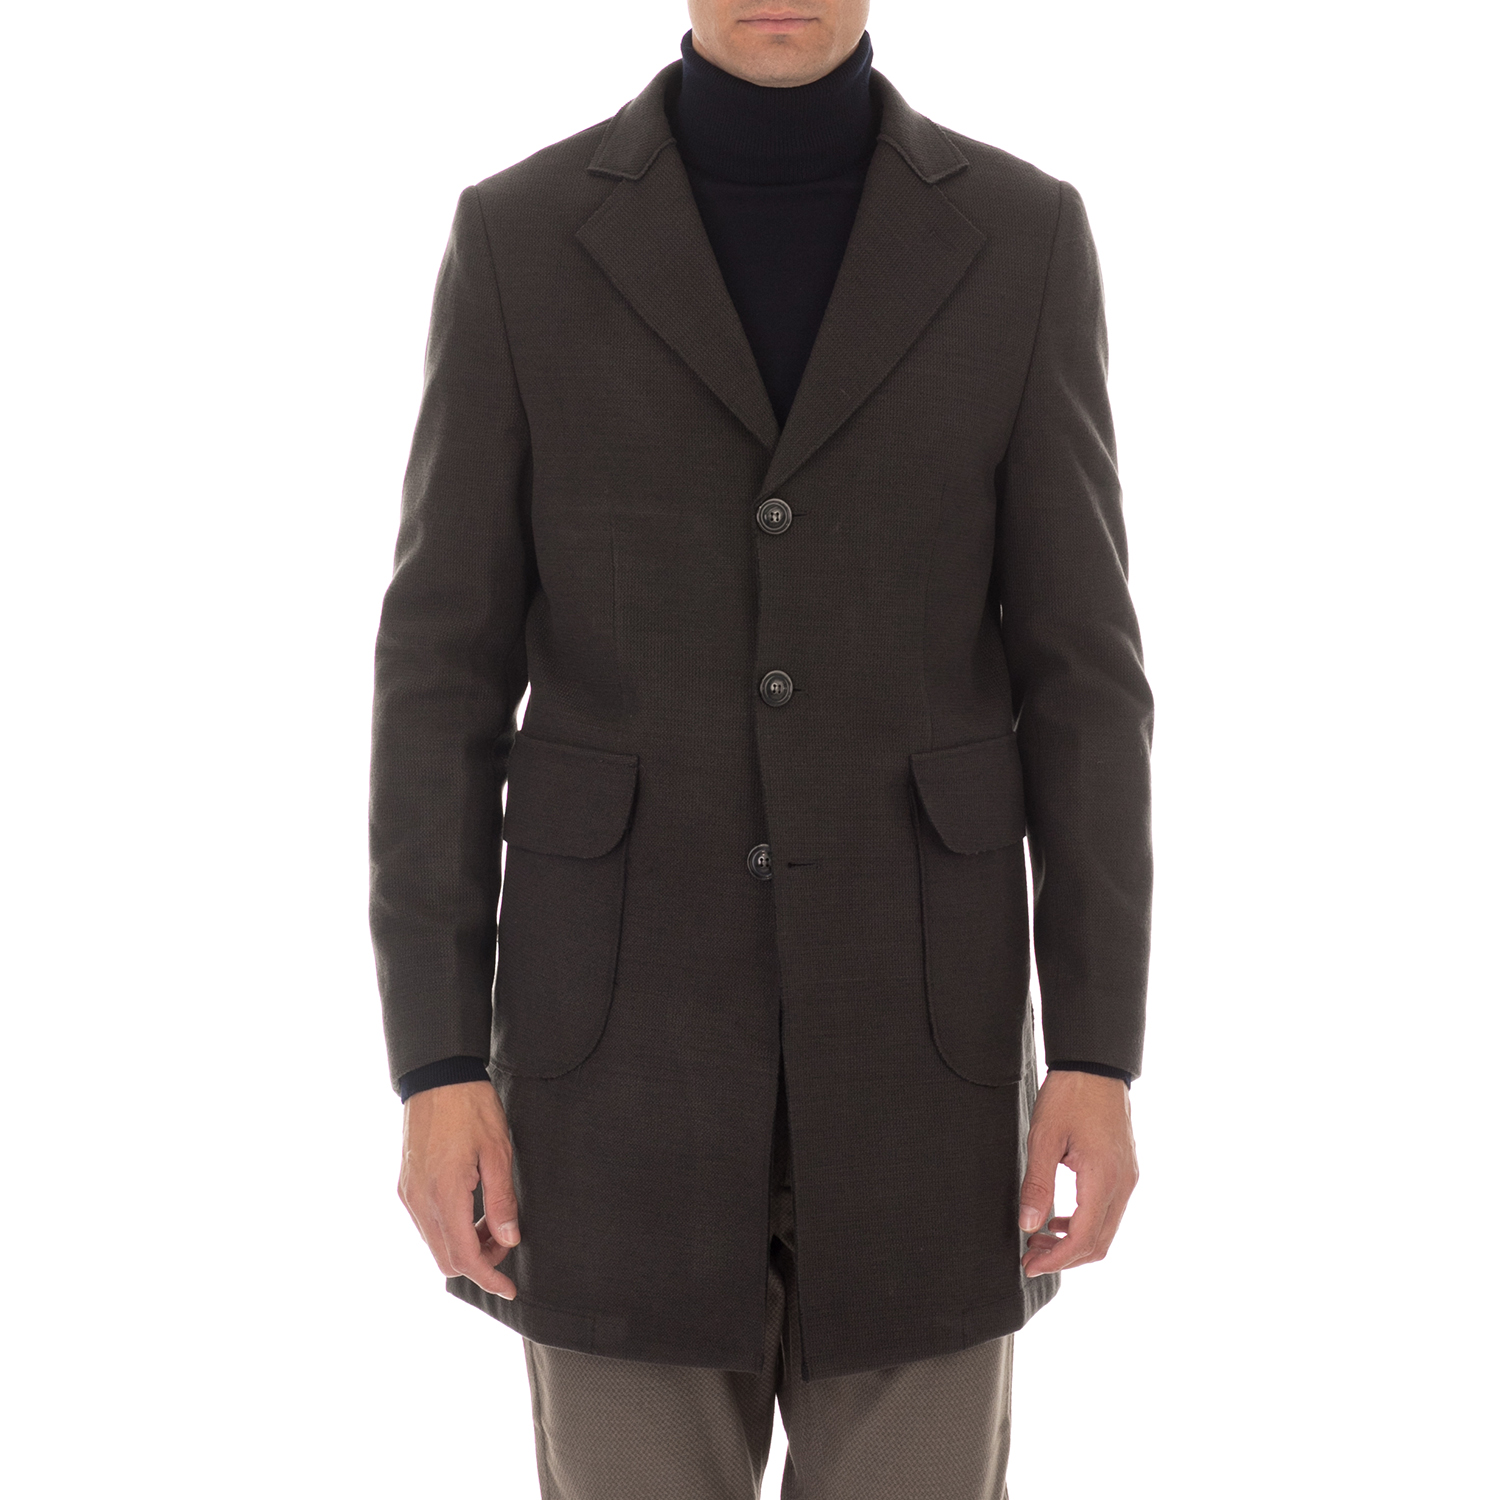 Ανδρικά/Ρούχα/Πανωφόρια/Παλτό SSEINSE - Ανδρικό παλτό SSEINSE CAPPOTTO ανθρακί